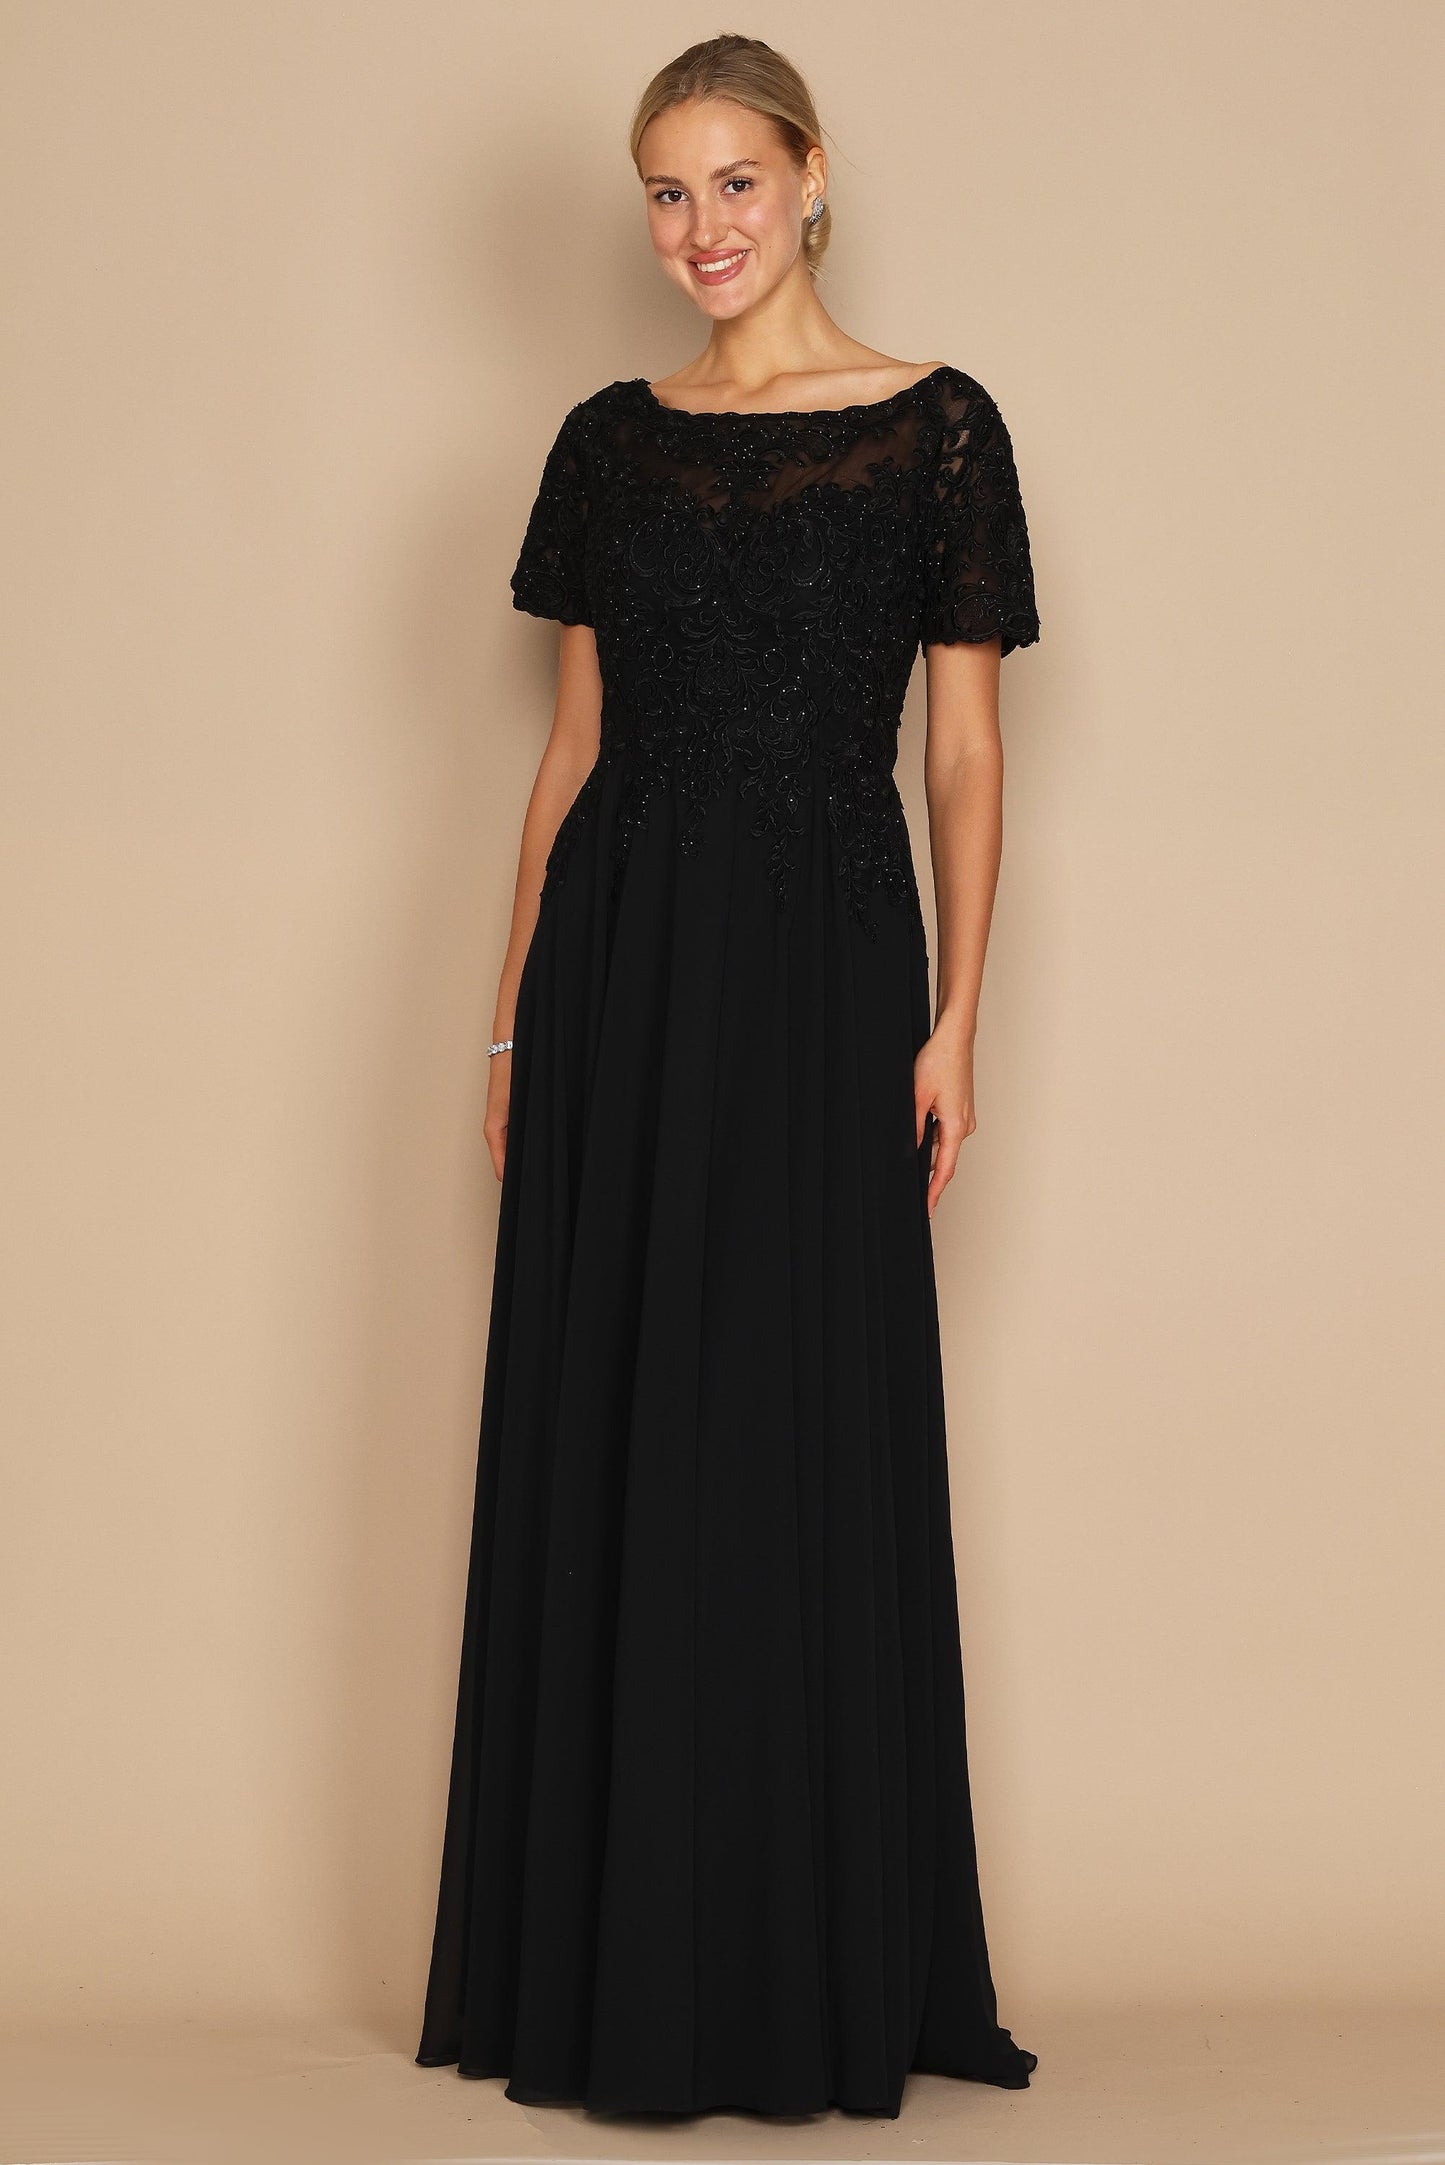 Formal Dresses Short Sleeve Mother of the Bride Formal Dress Black